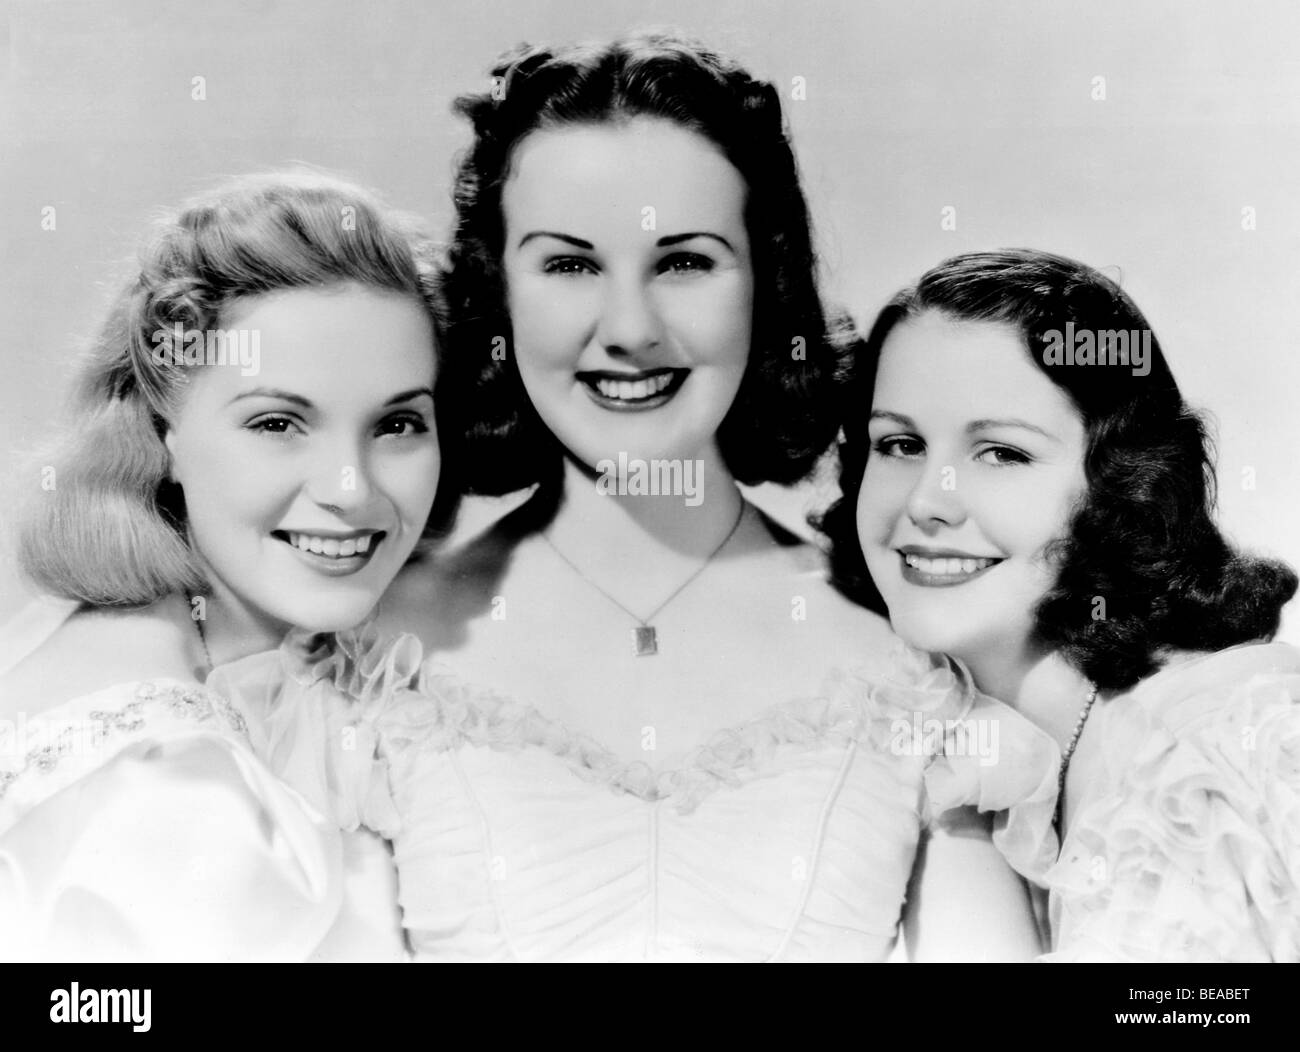 3 SMART RAGAZZE CRESCERE - 1939 film universale con Deanna Durbin Foto Stock